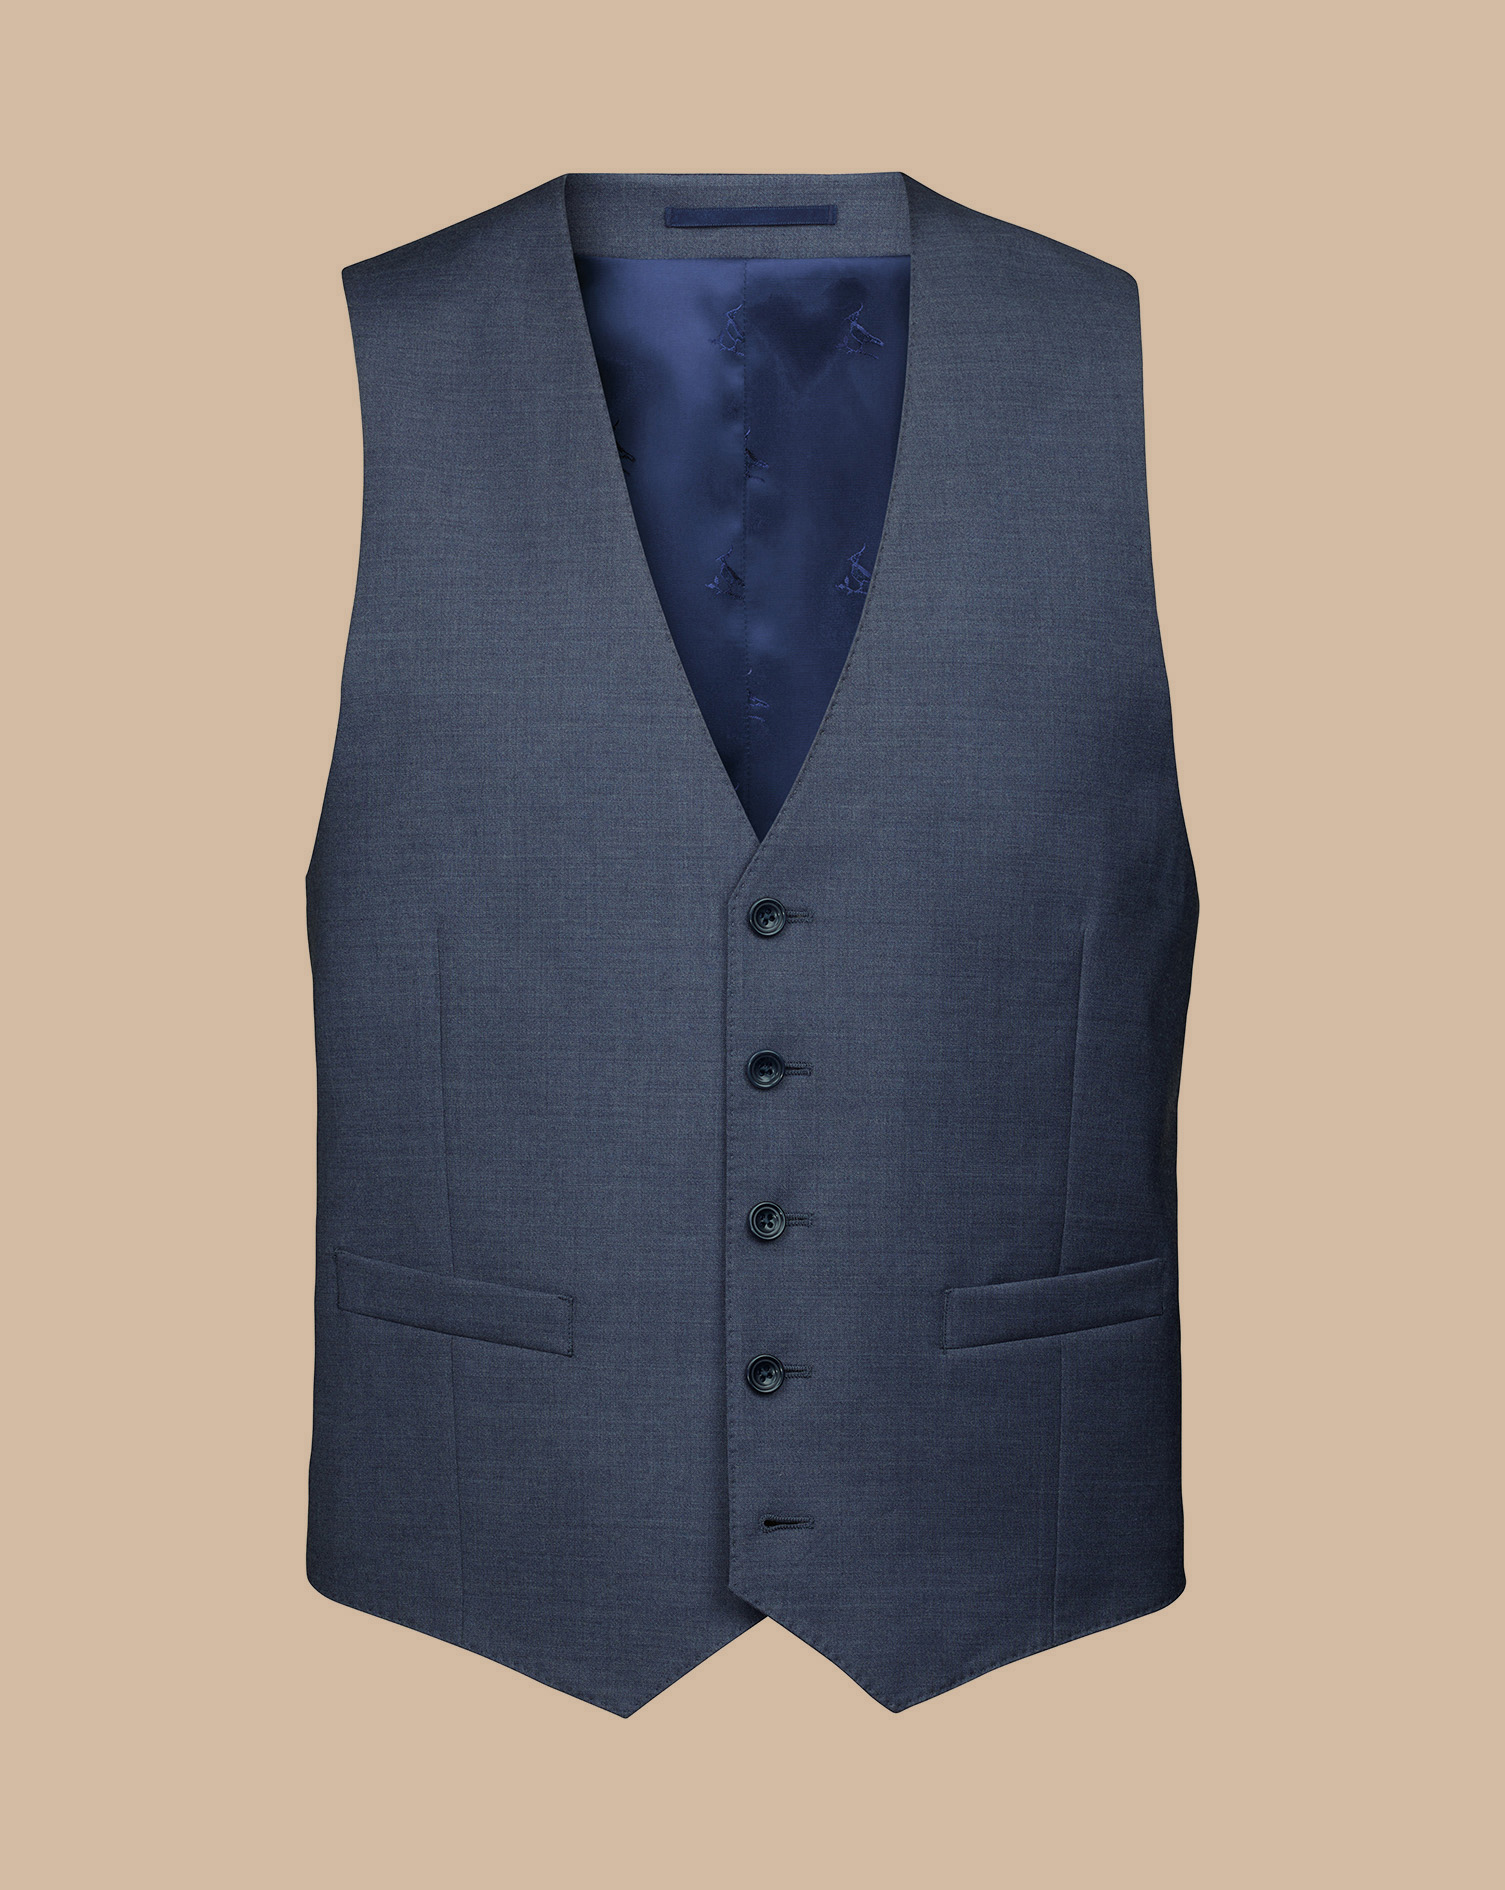 Men's Charles Tyrwhitt Italian Suit Waistcoat - Heather Blue Size w46 Wool
